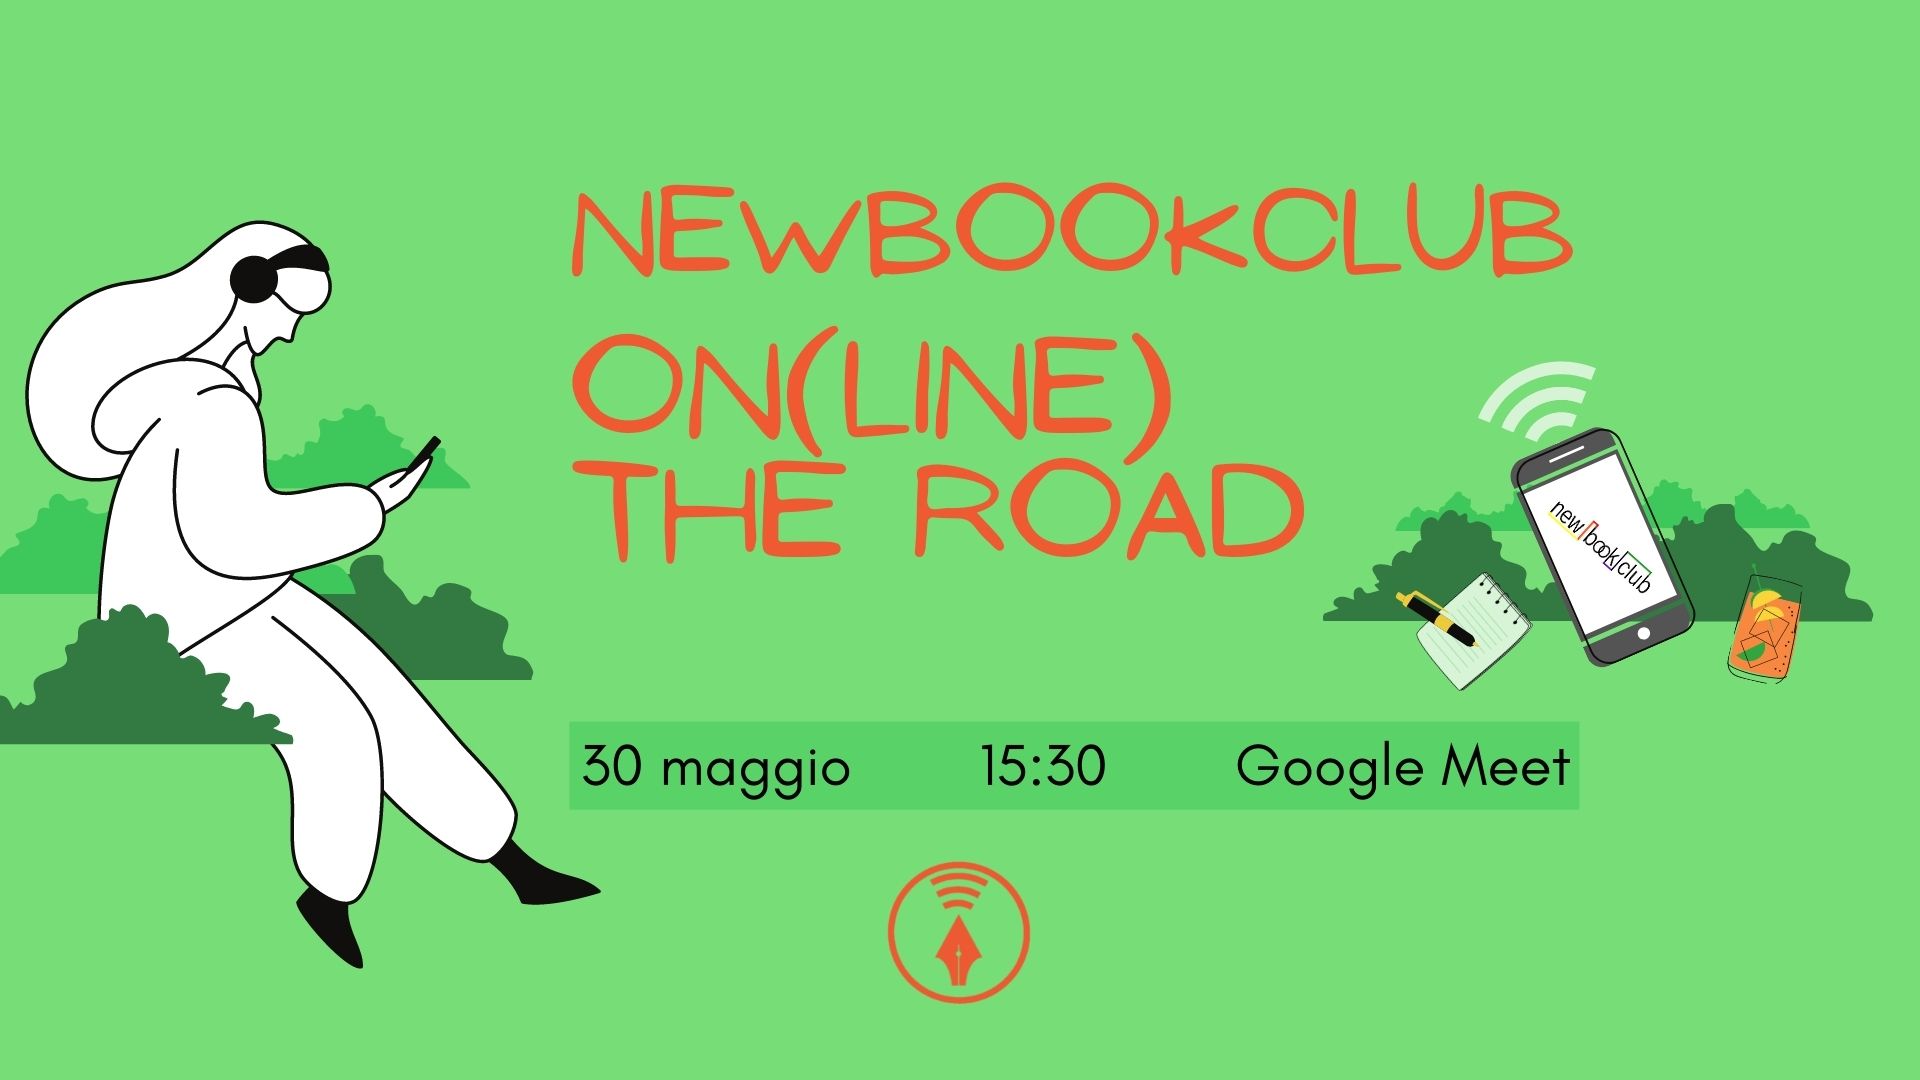 Newbookclub on (line) the road